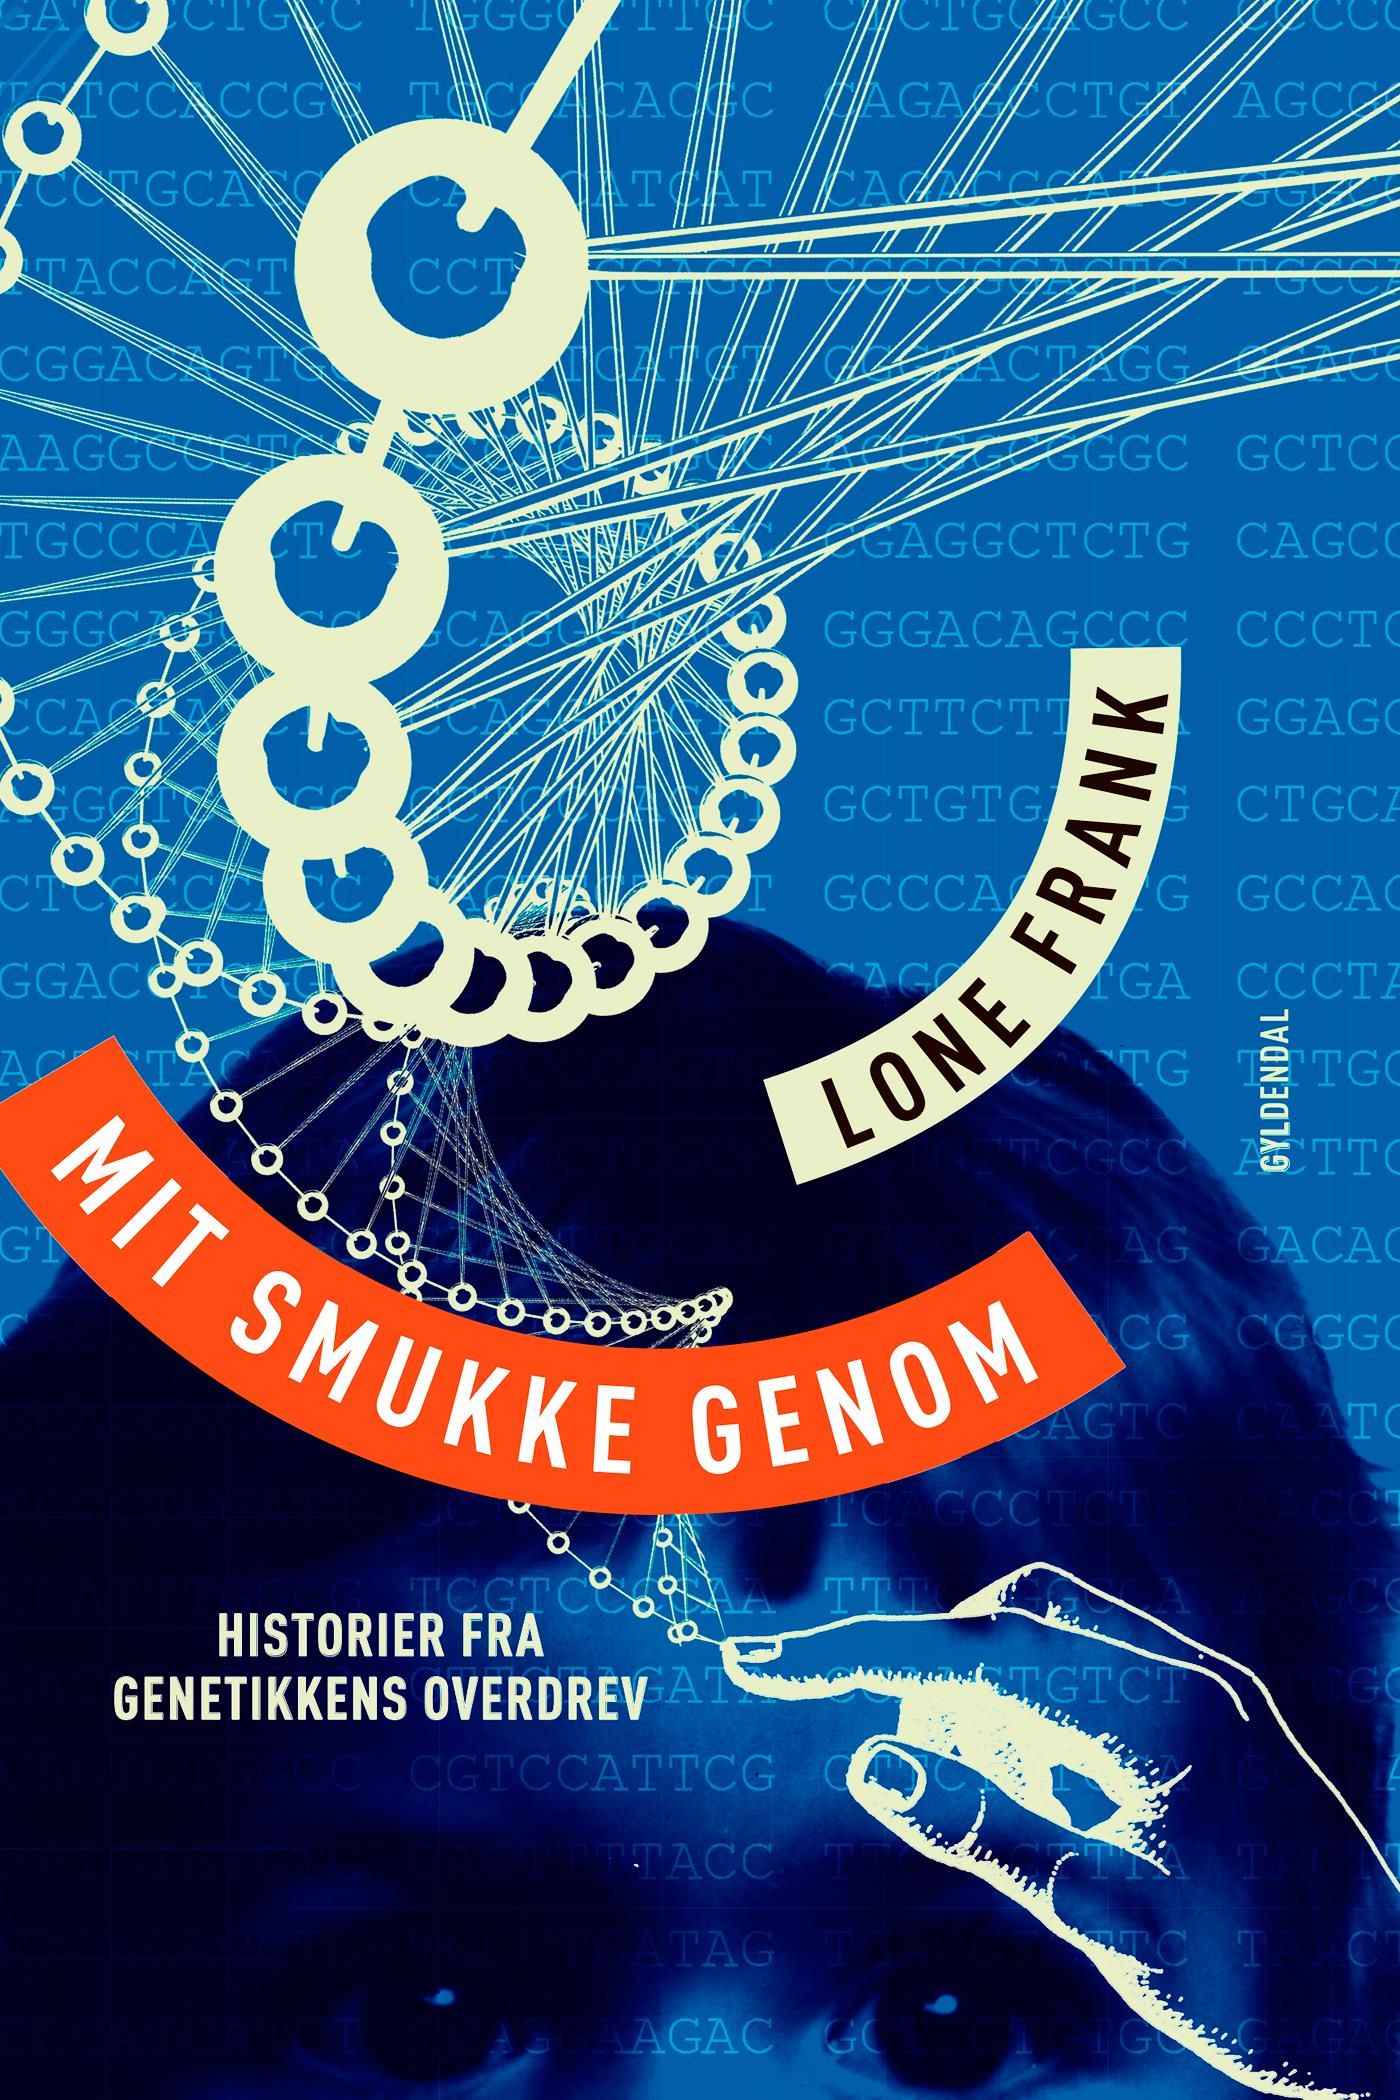 Mit smukke genom, e-bog af Lone Frank